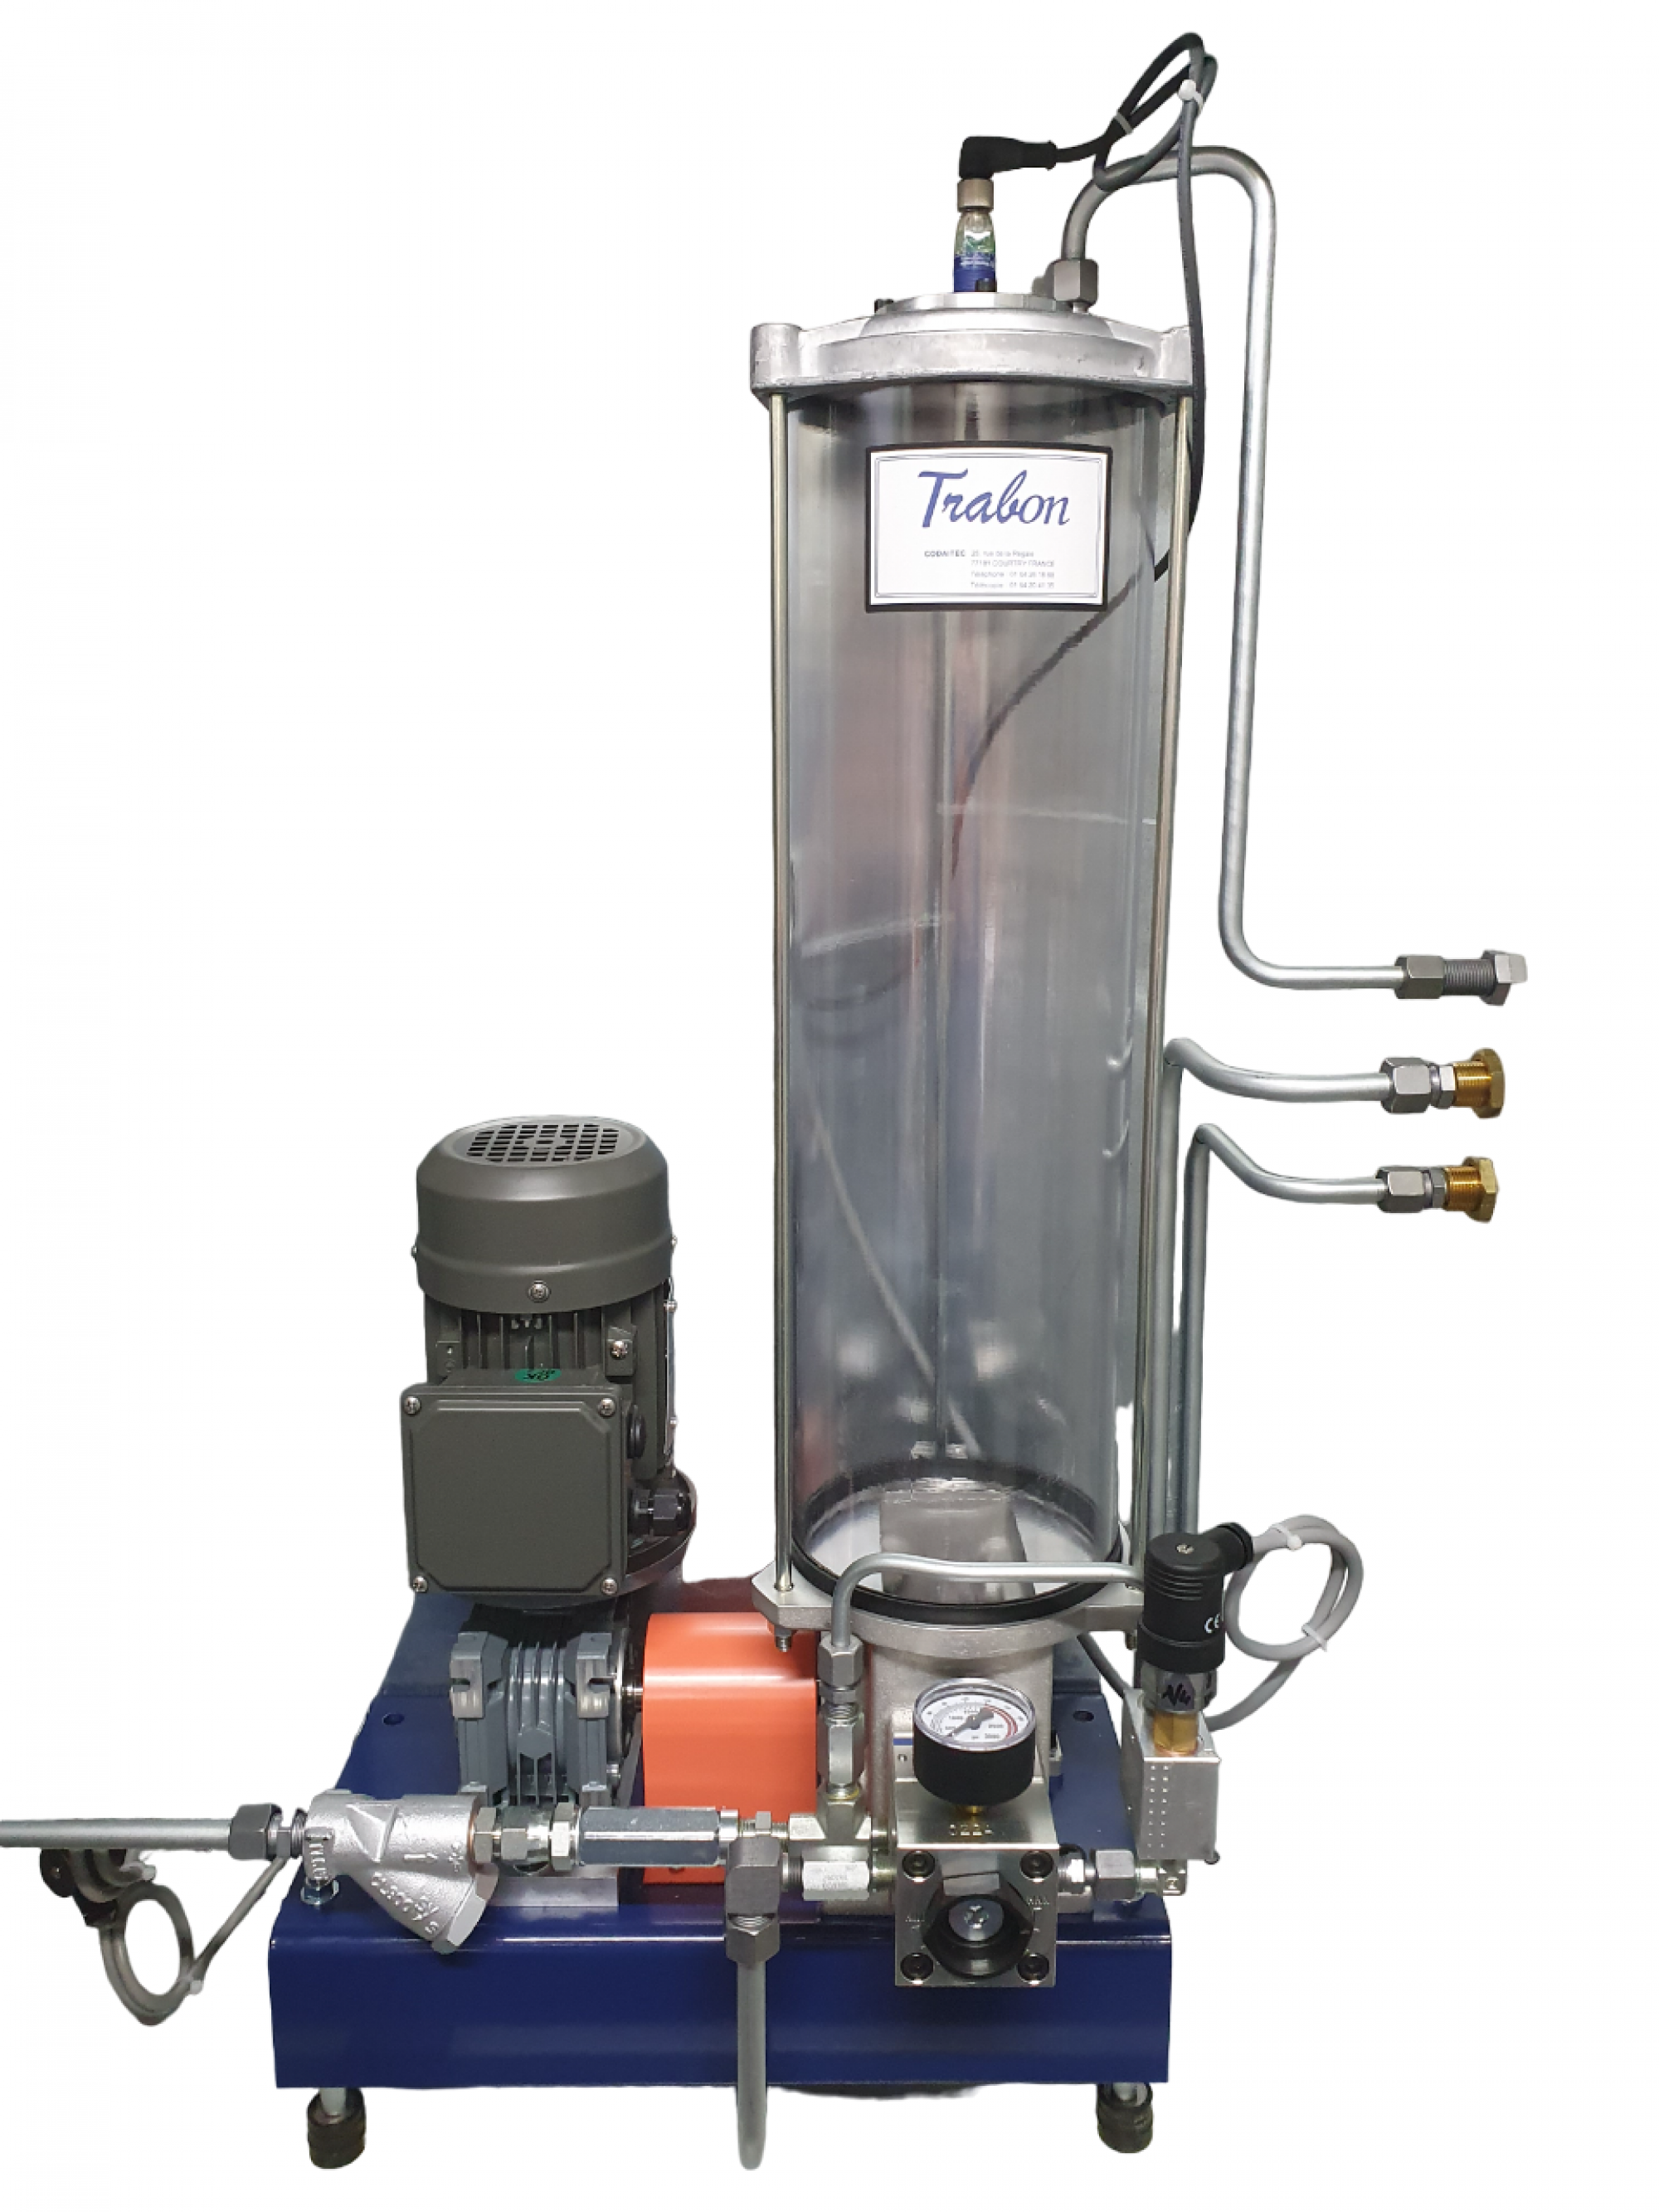 Pompe électrique trabon lubemaster, conçue pour répondre à tous les besoins de lubrification huile et graisse_0